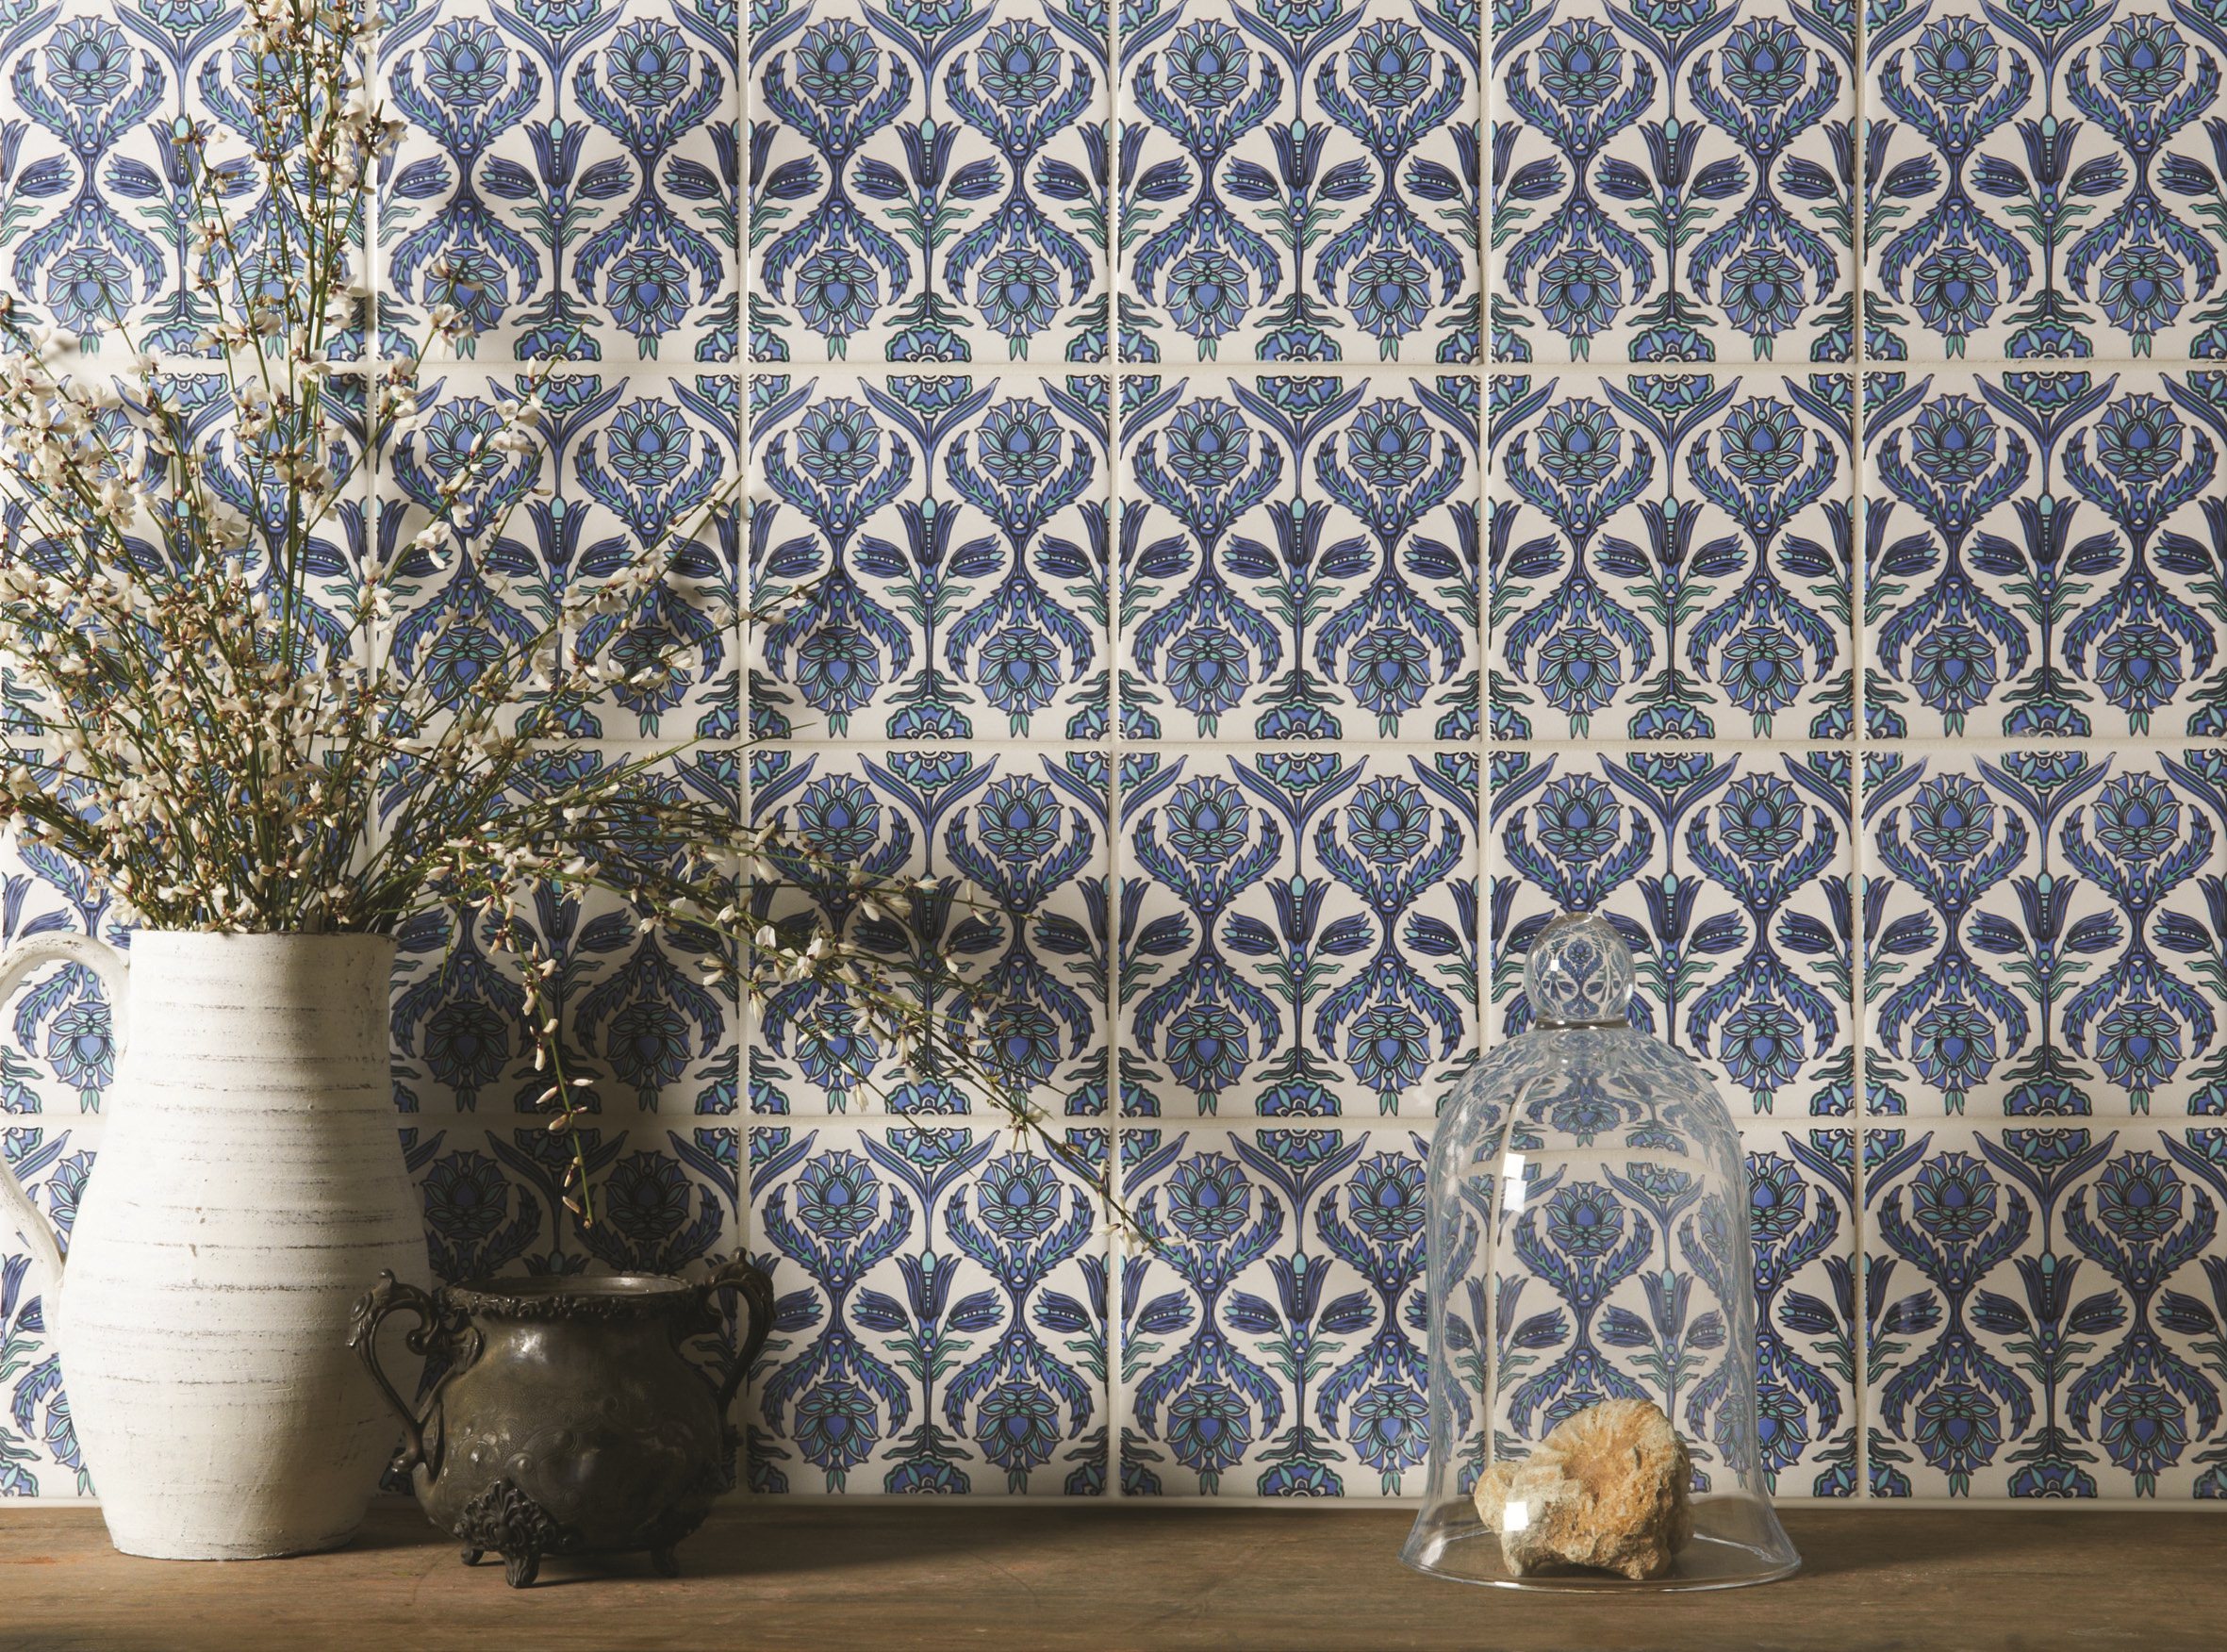 Mediterranean kitchen tiles